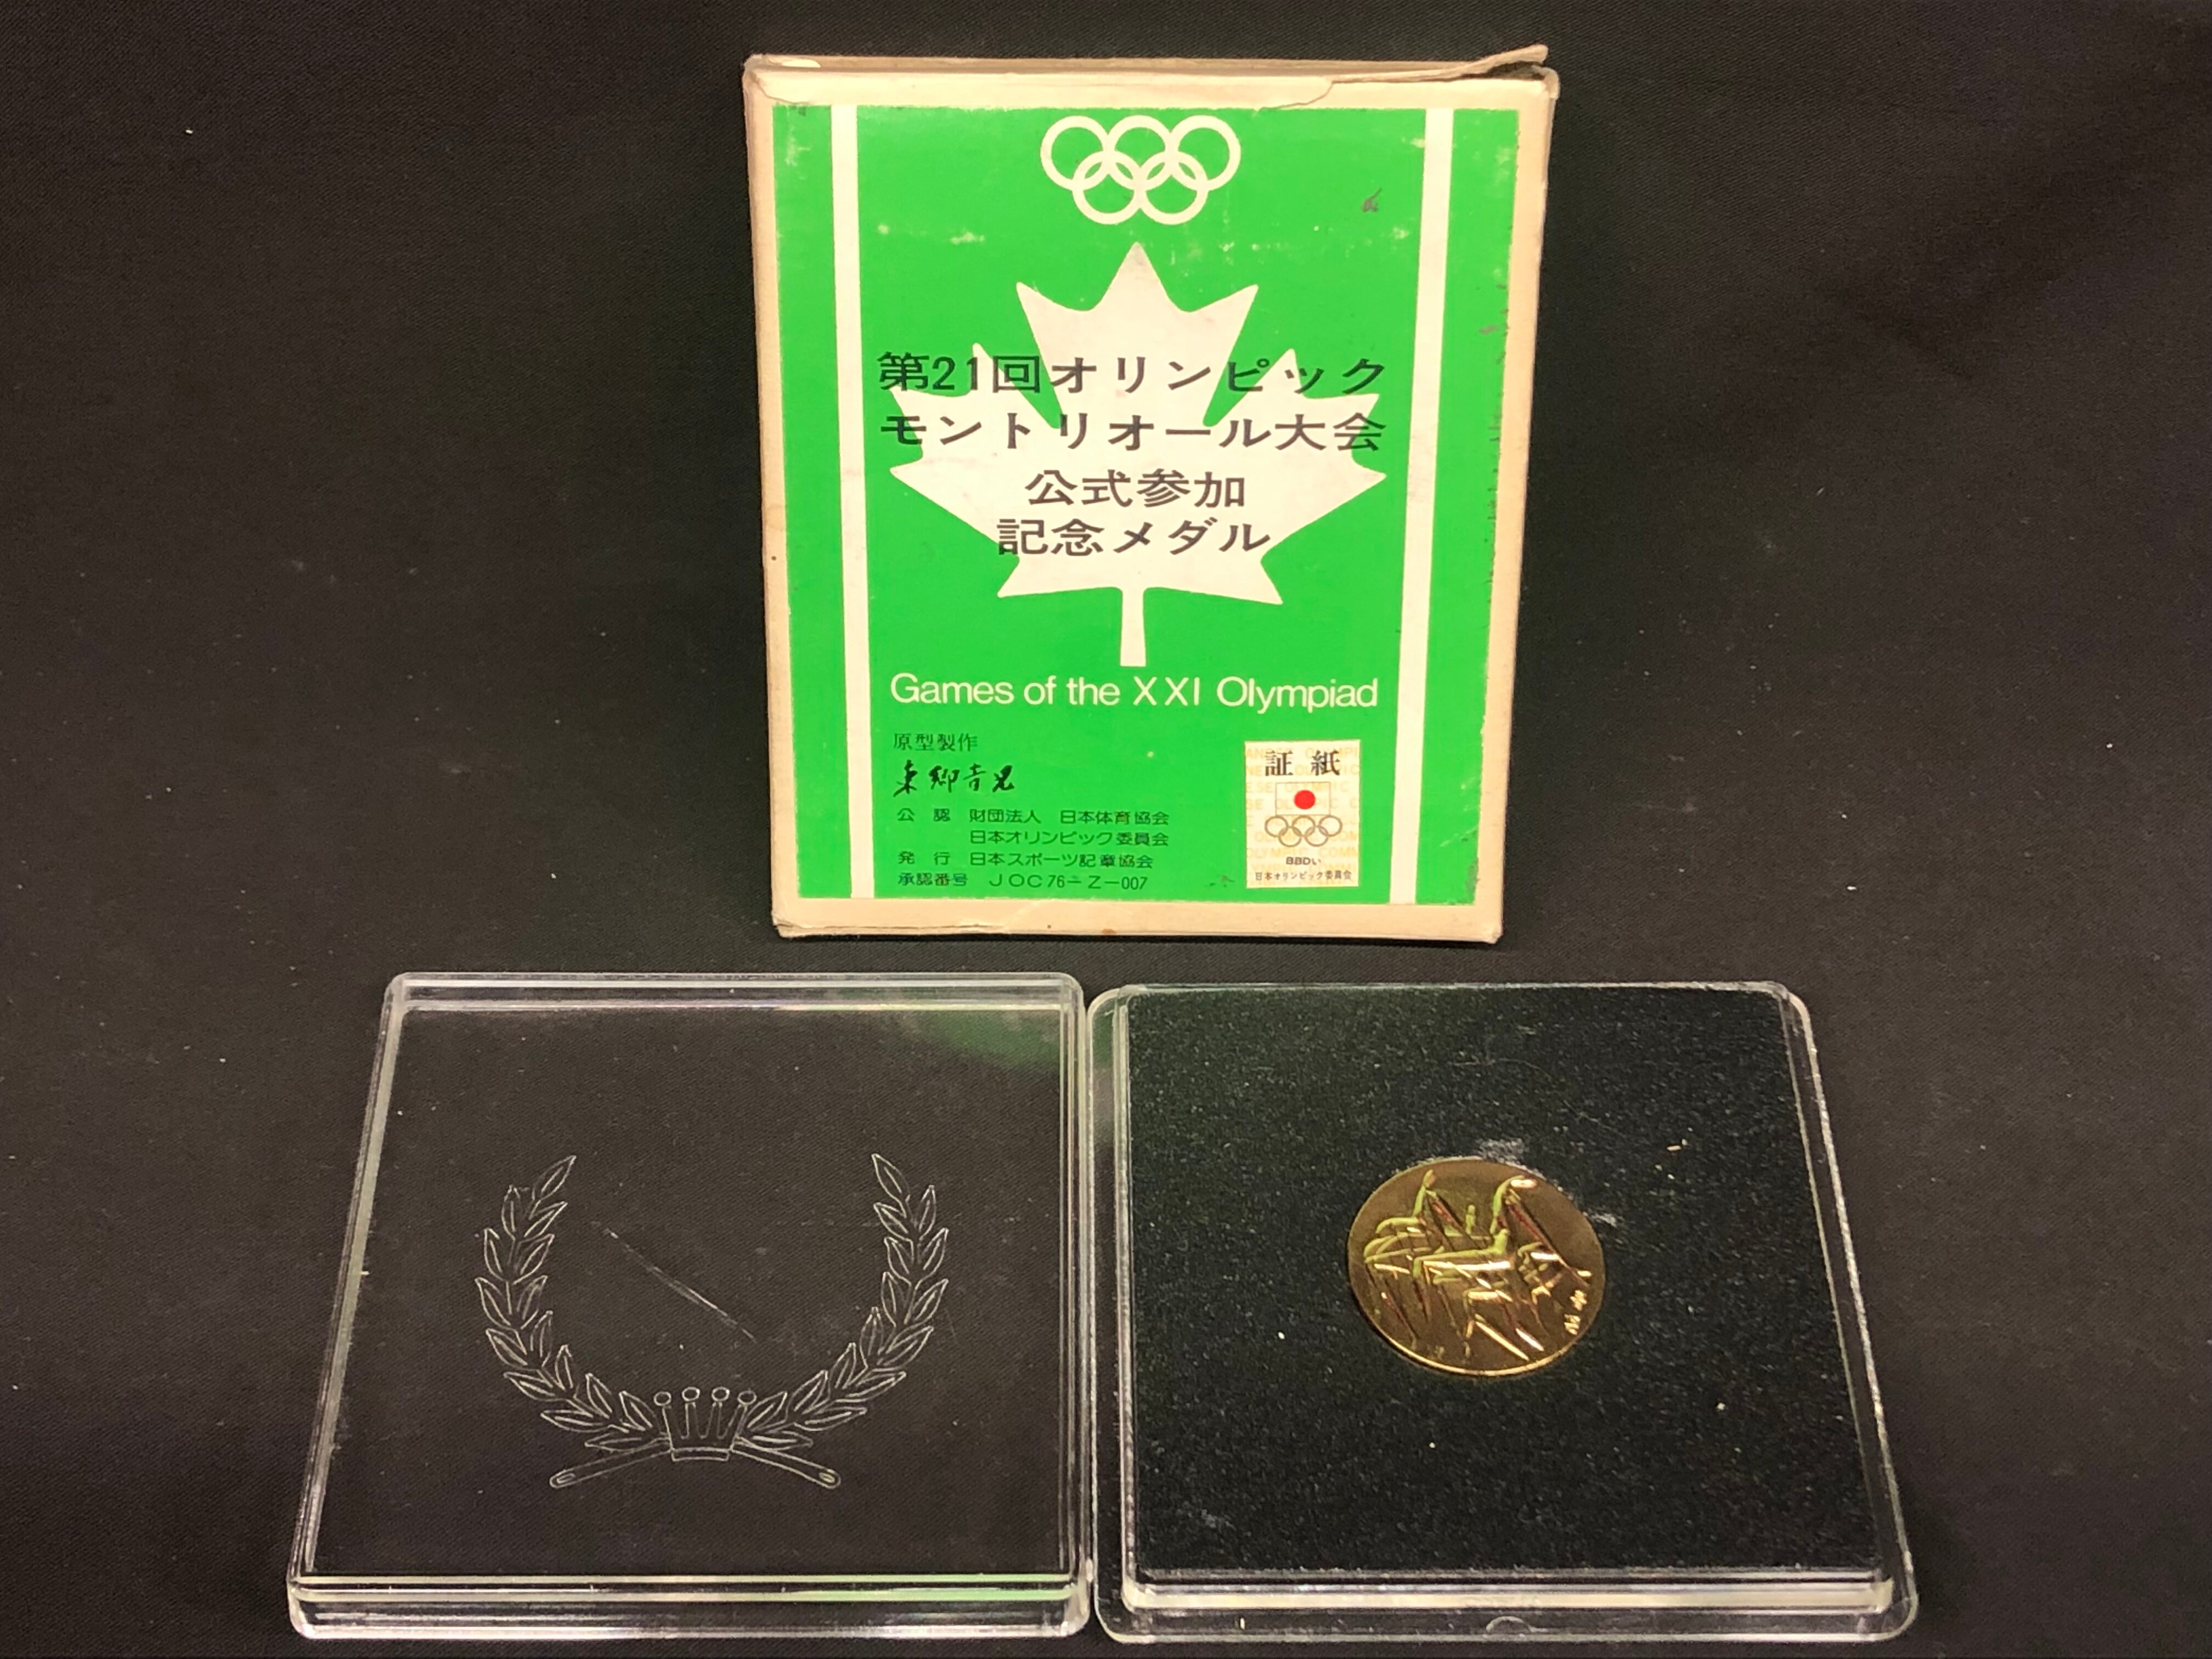 オリンピック モントリオール大会 記念メダル www.krzysztofbialy.com